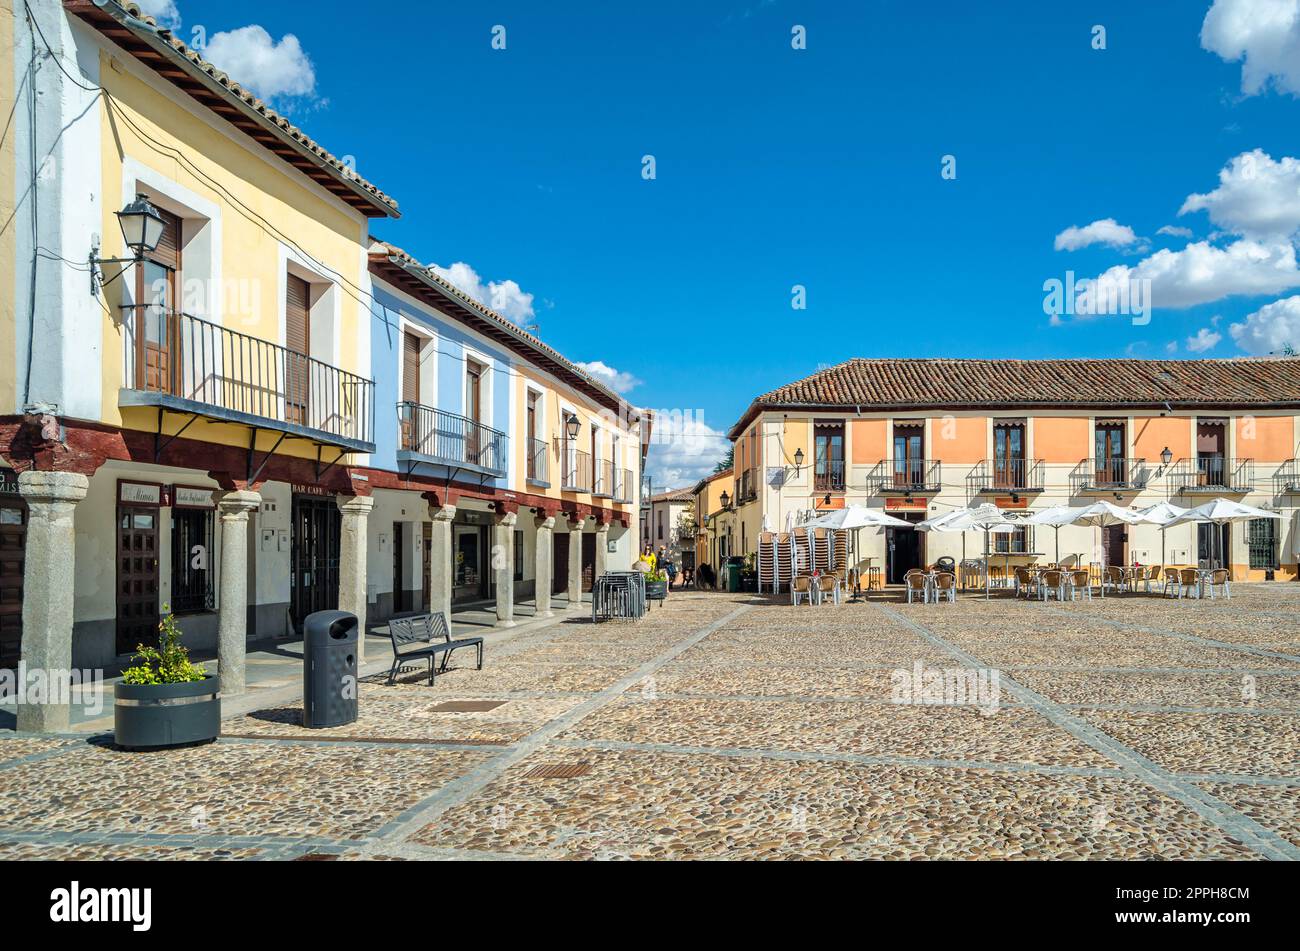 NAVALCARNERO, SPANIEN - 20. SEPTEMBER 2021: Hauptplatz (Plaza de Segovia genannt) in der Stadt Navalcarnero, Gemeinde Madrid, Spanien. Es ist ein wunderschöner mittelalterlicher kastilischer Arkadeplatz Stockfoto